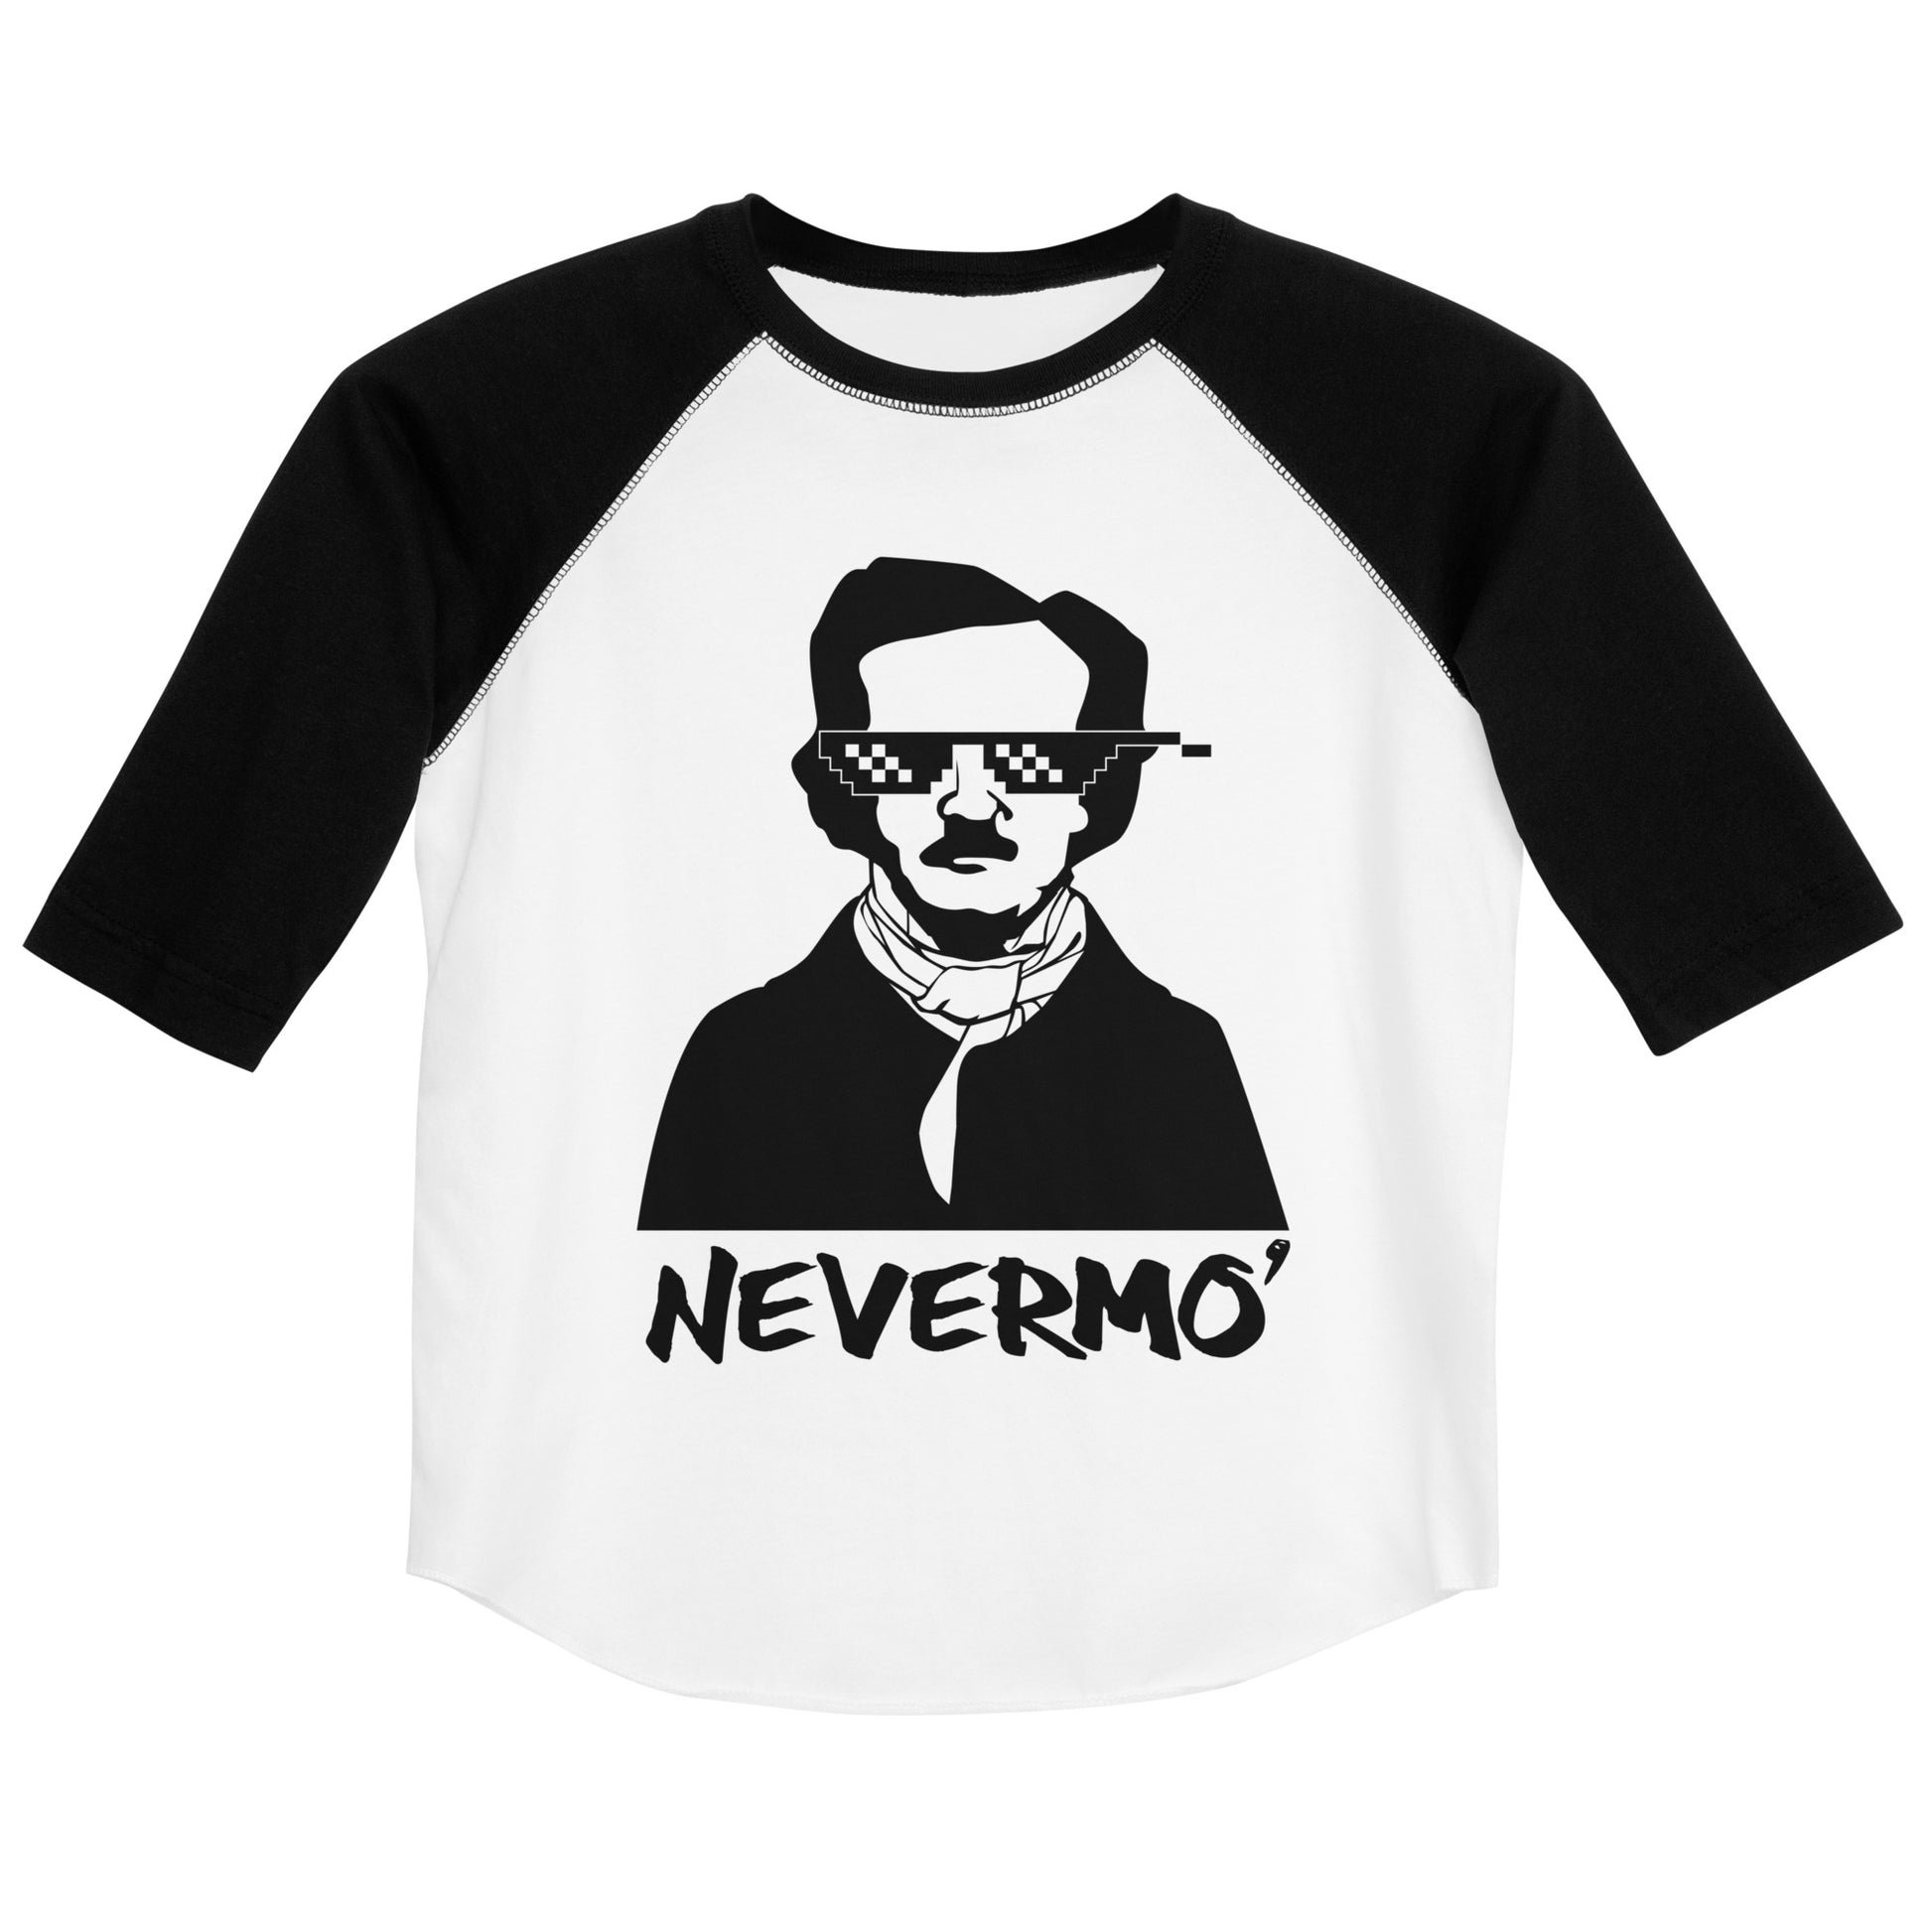 Youth Edgar Allan Poe "Nevermo" Unisex baseball shirt - White Black Front